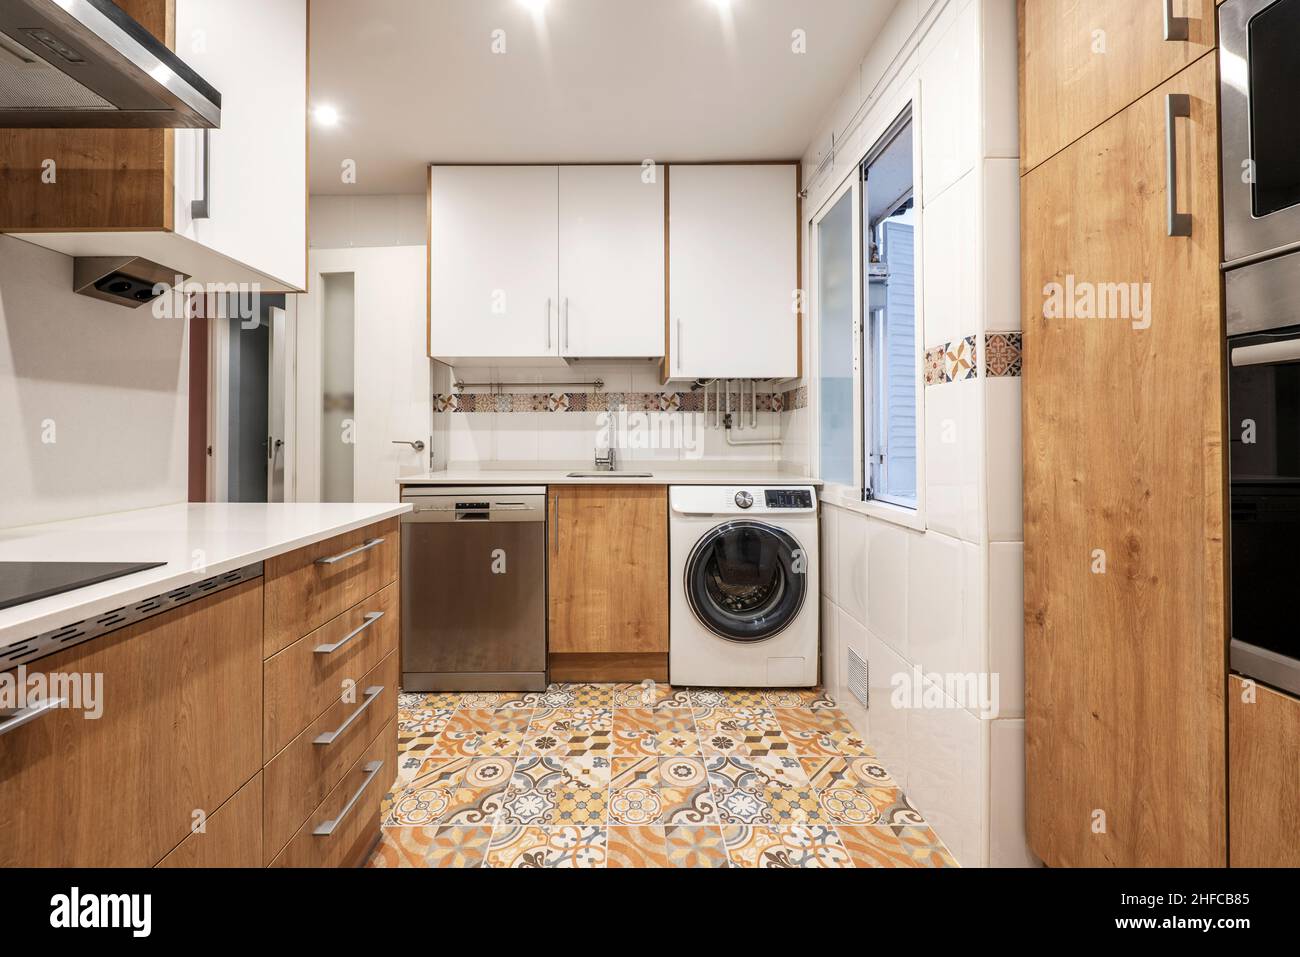 Cucina con mobili in legno combinati con mobili bianchi, pareti in porcellana bianca e pavimenti in gres idraulico Foto Stock